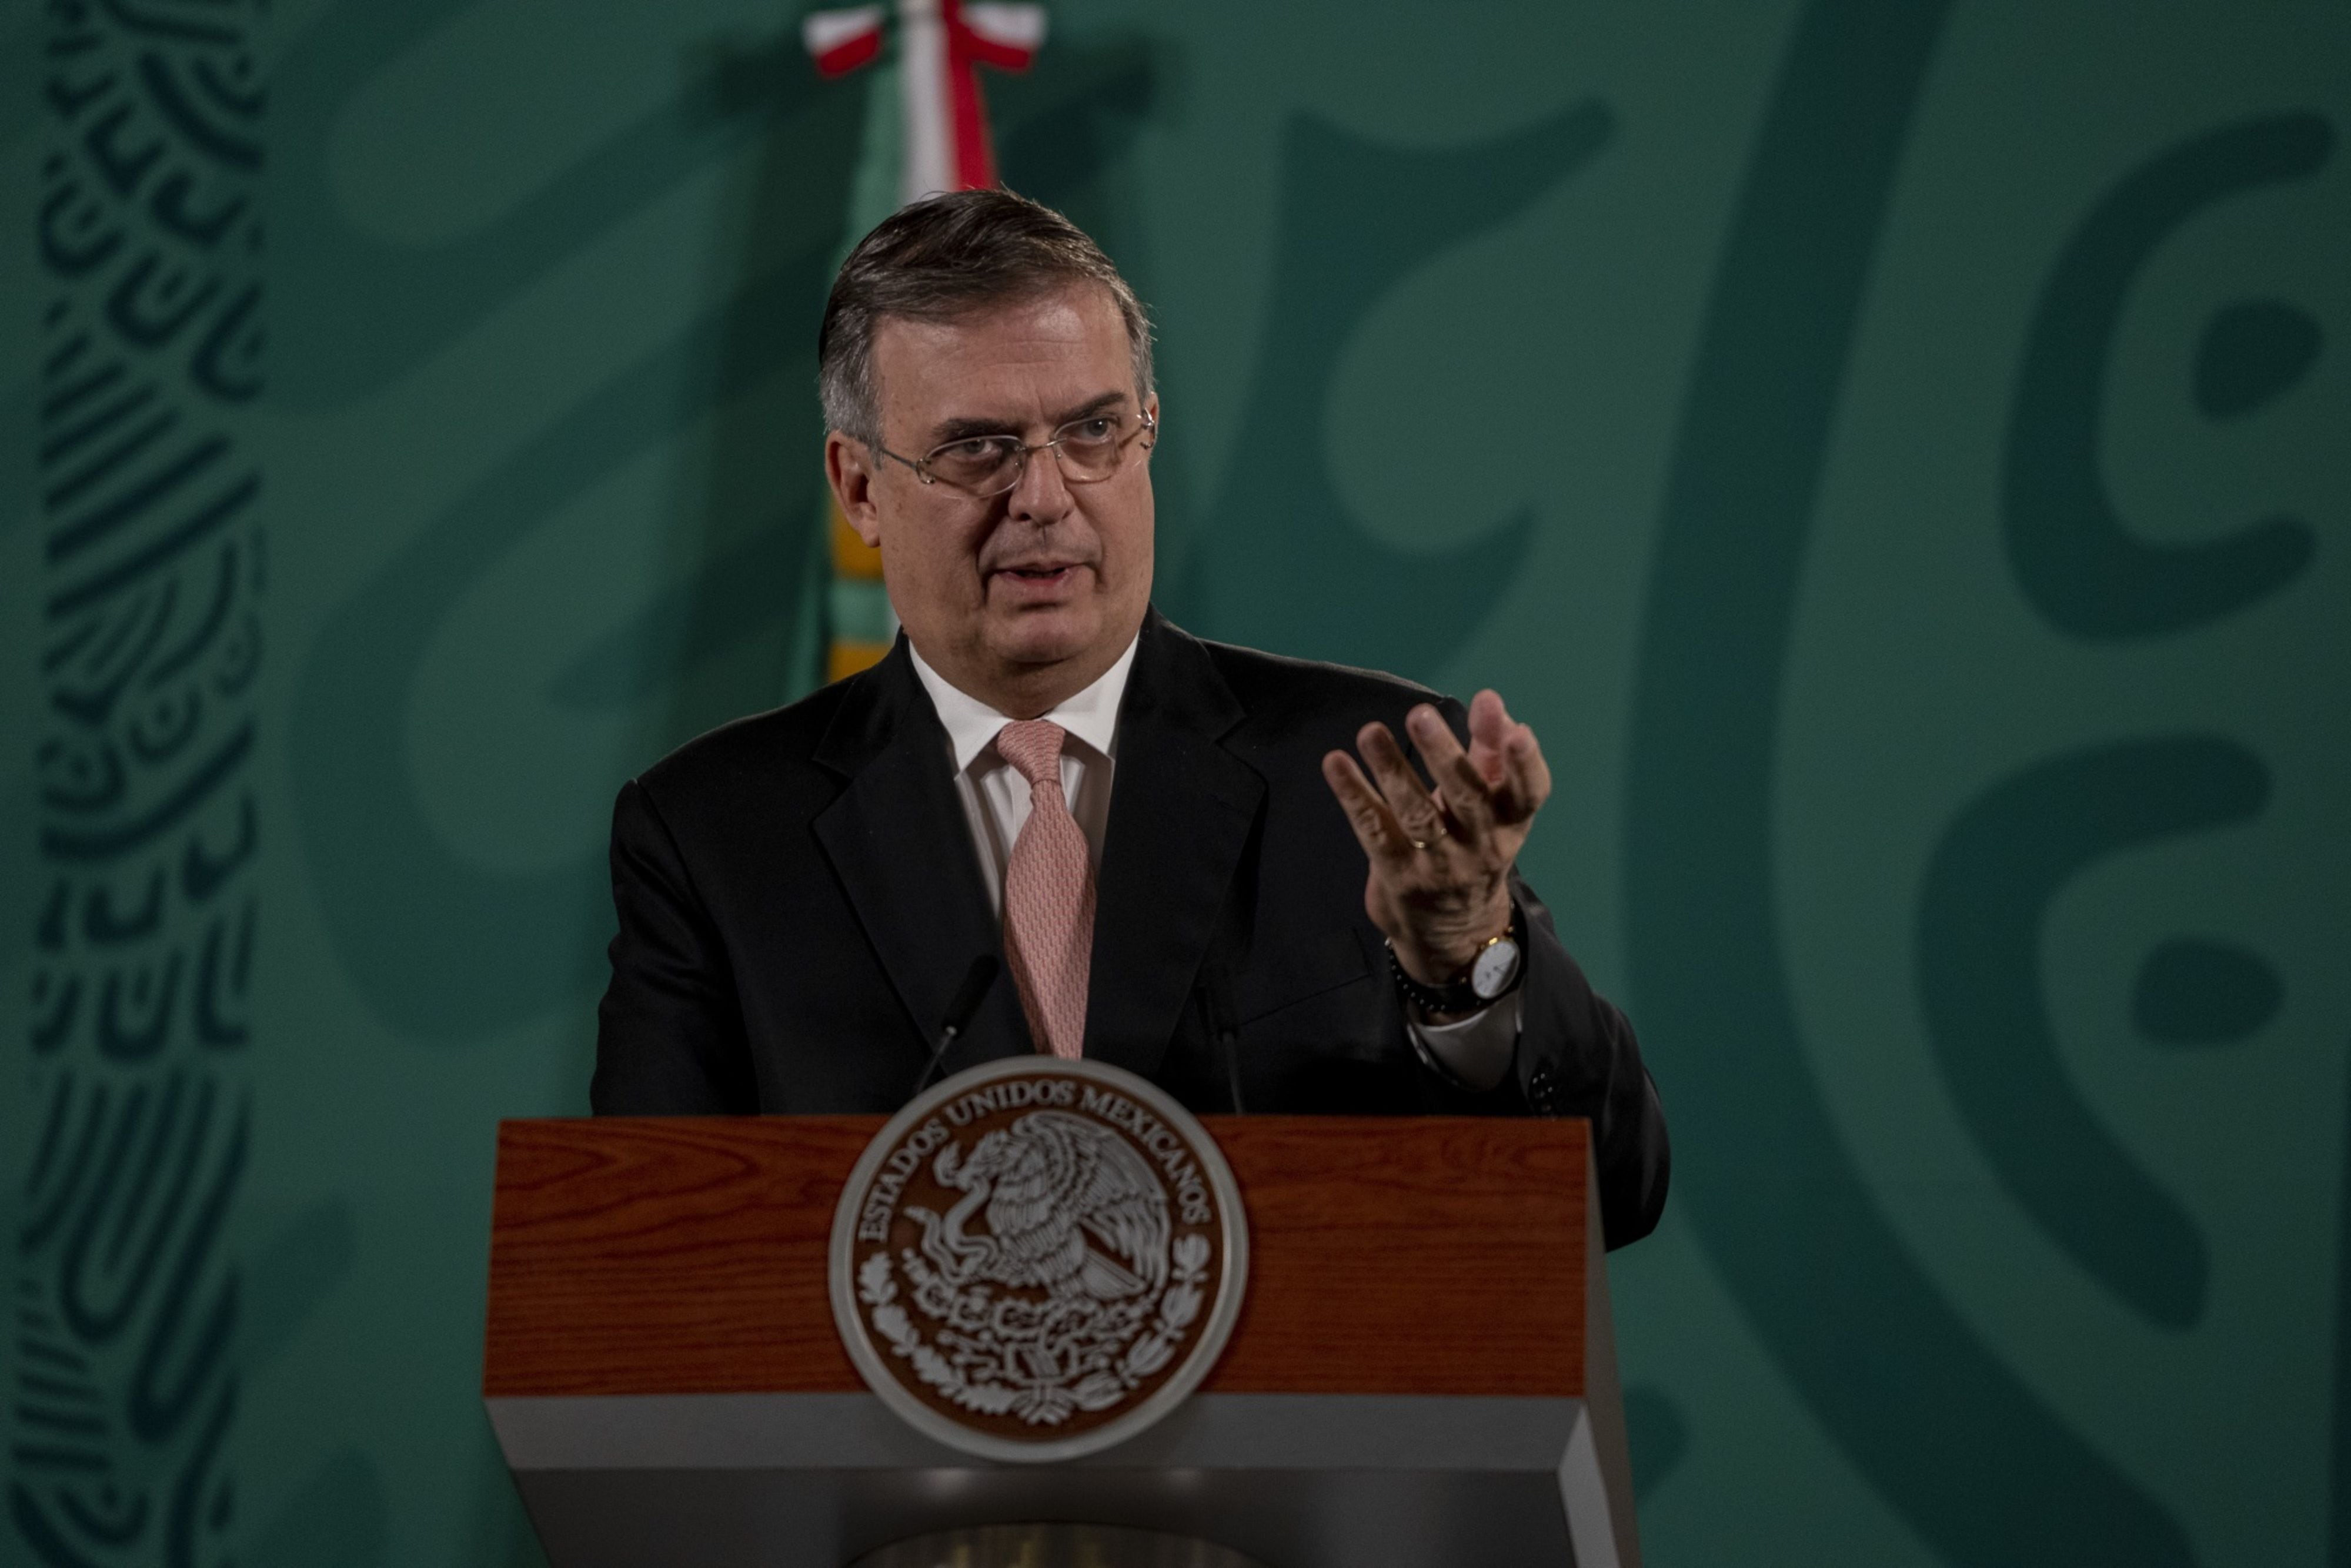 Greg Abbott presionó a gobernadores mexicanos por inspecciones en frontera: Ebrard